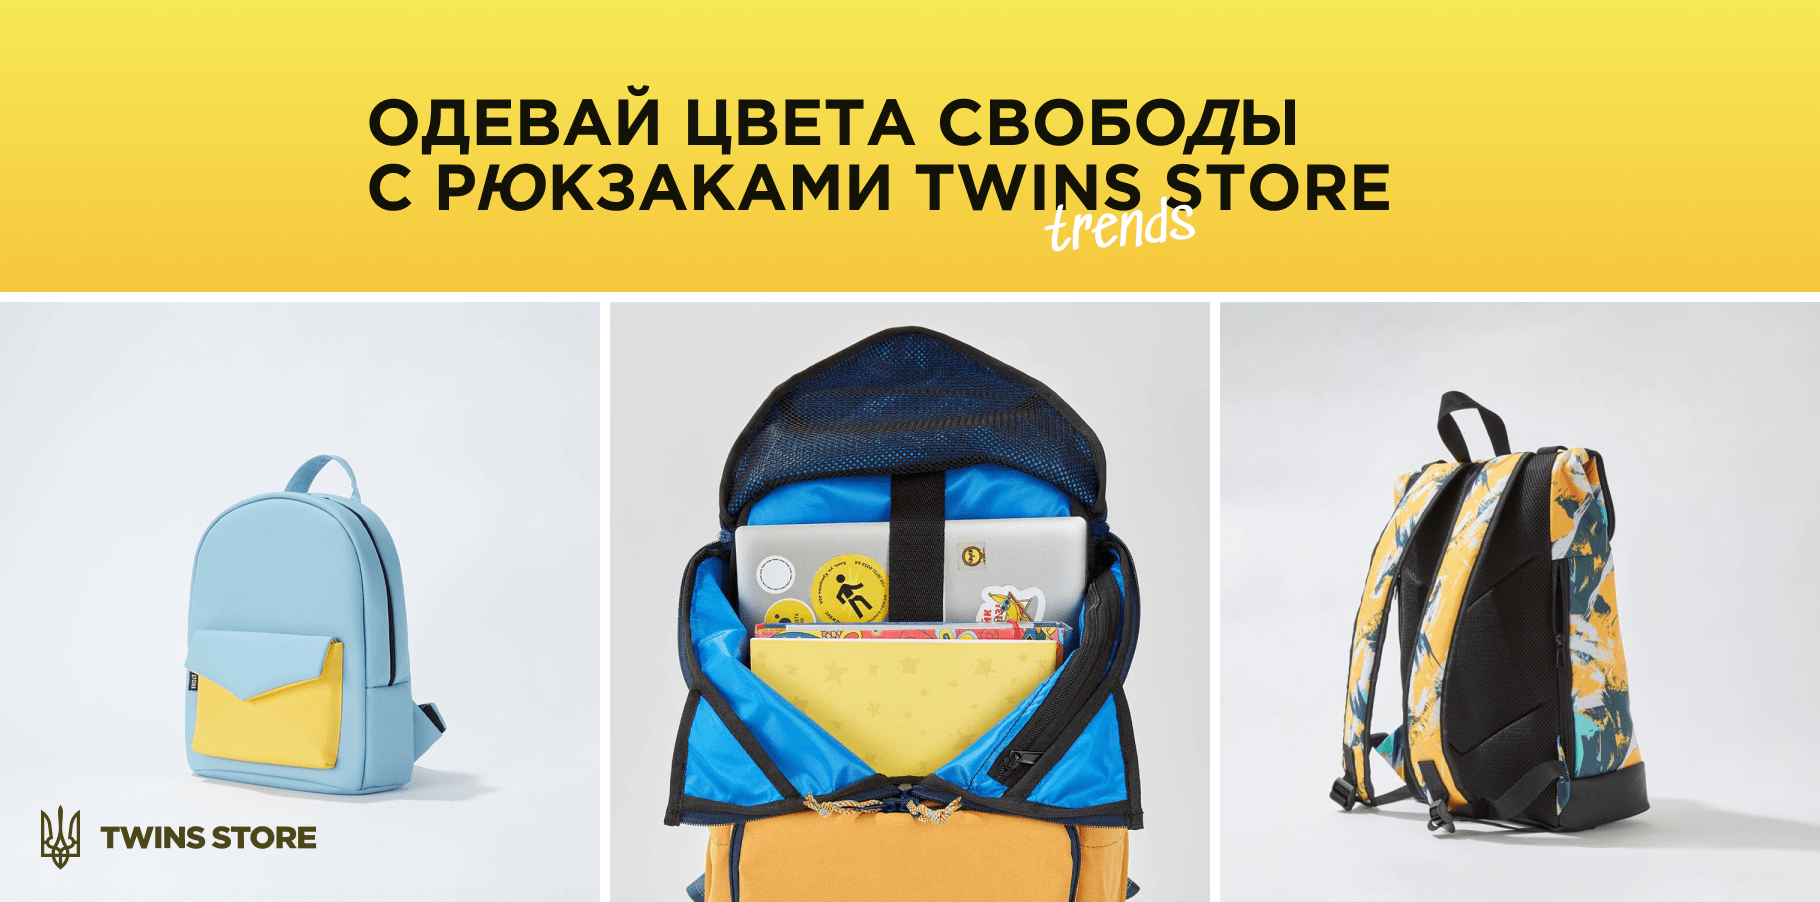 Рюкзак патриотический twins store 